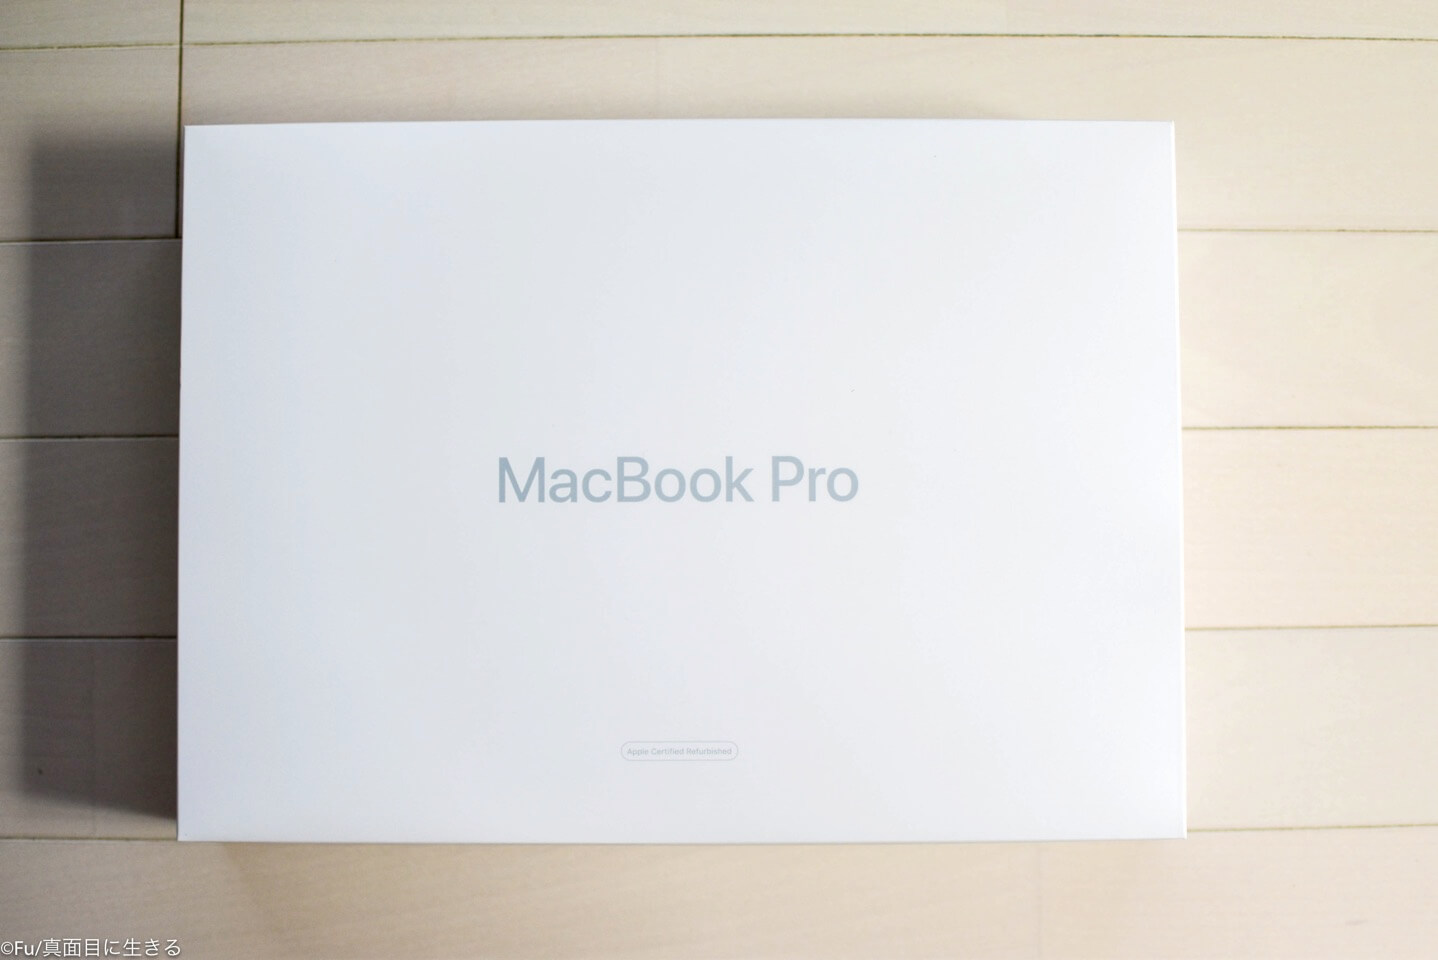 MacBook Pro開封